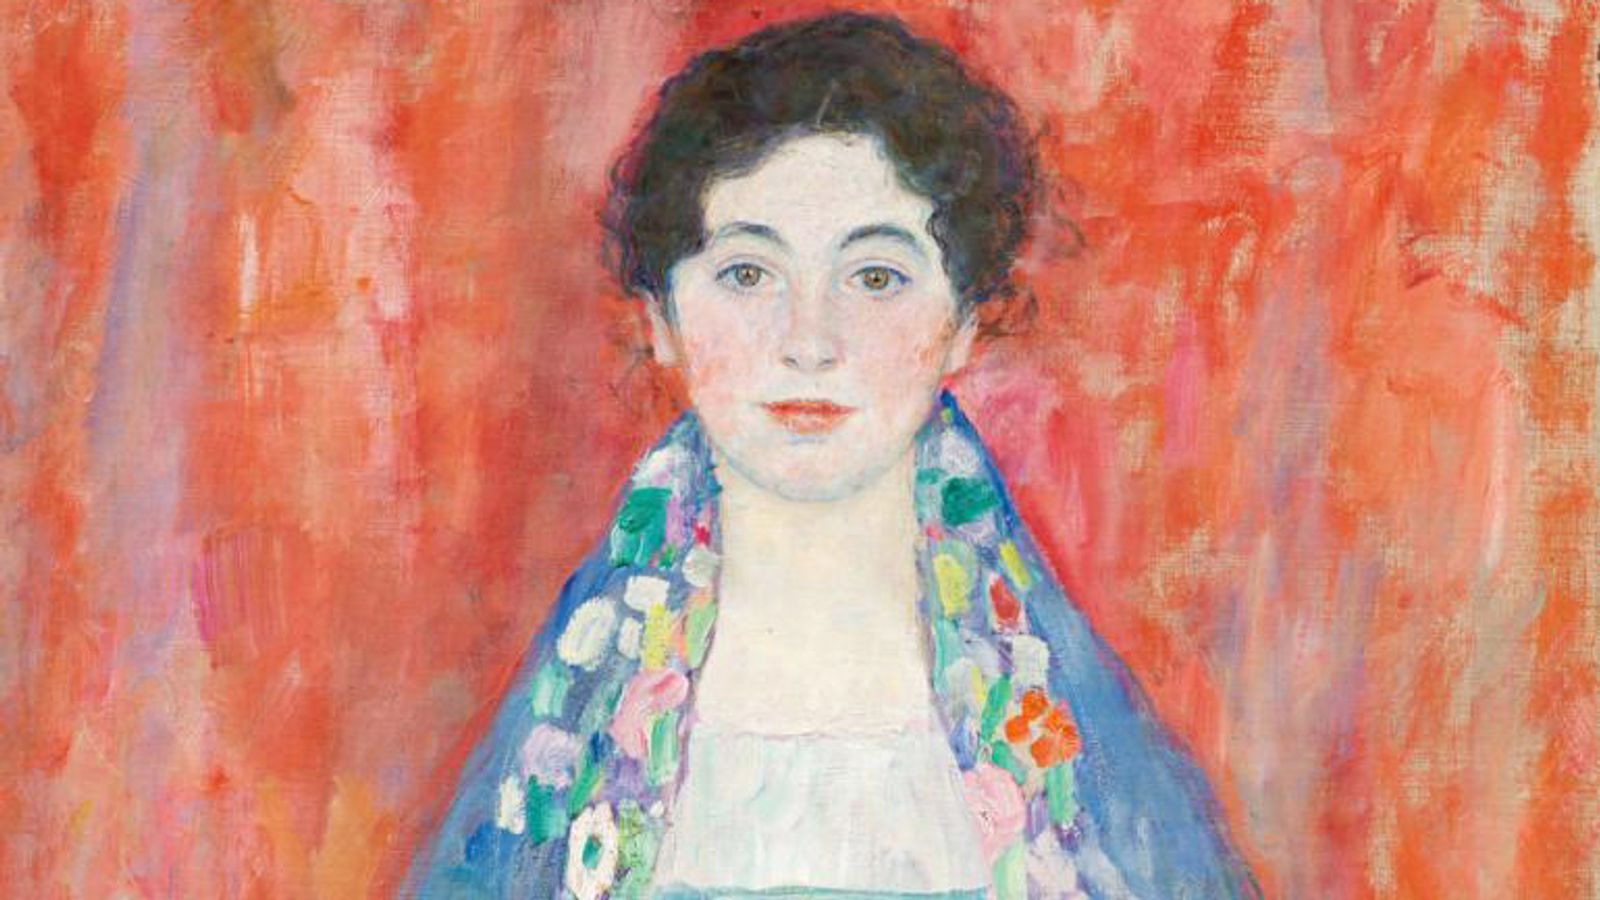 Un tableau perdu de Gustav Klimt retrouvé après près de 100 ans pour être mis aux enchères |  Nouvelles du monde